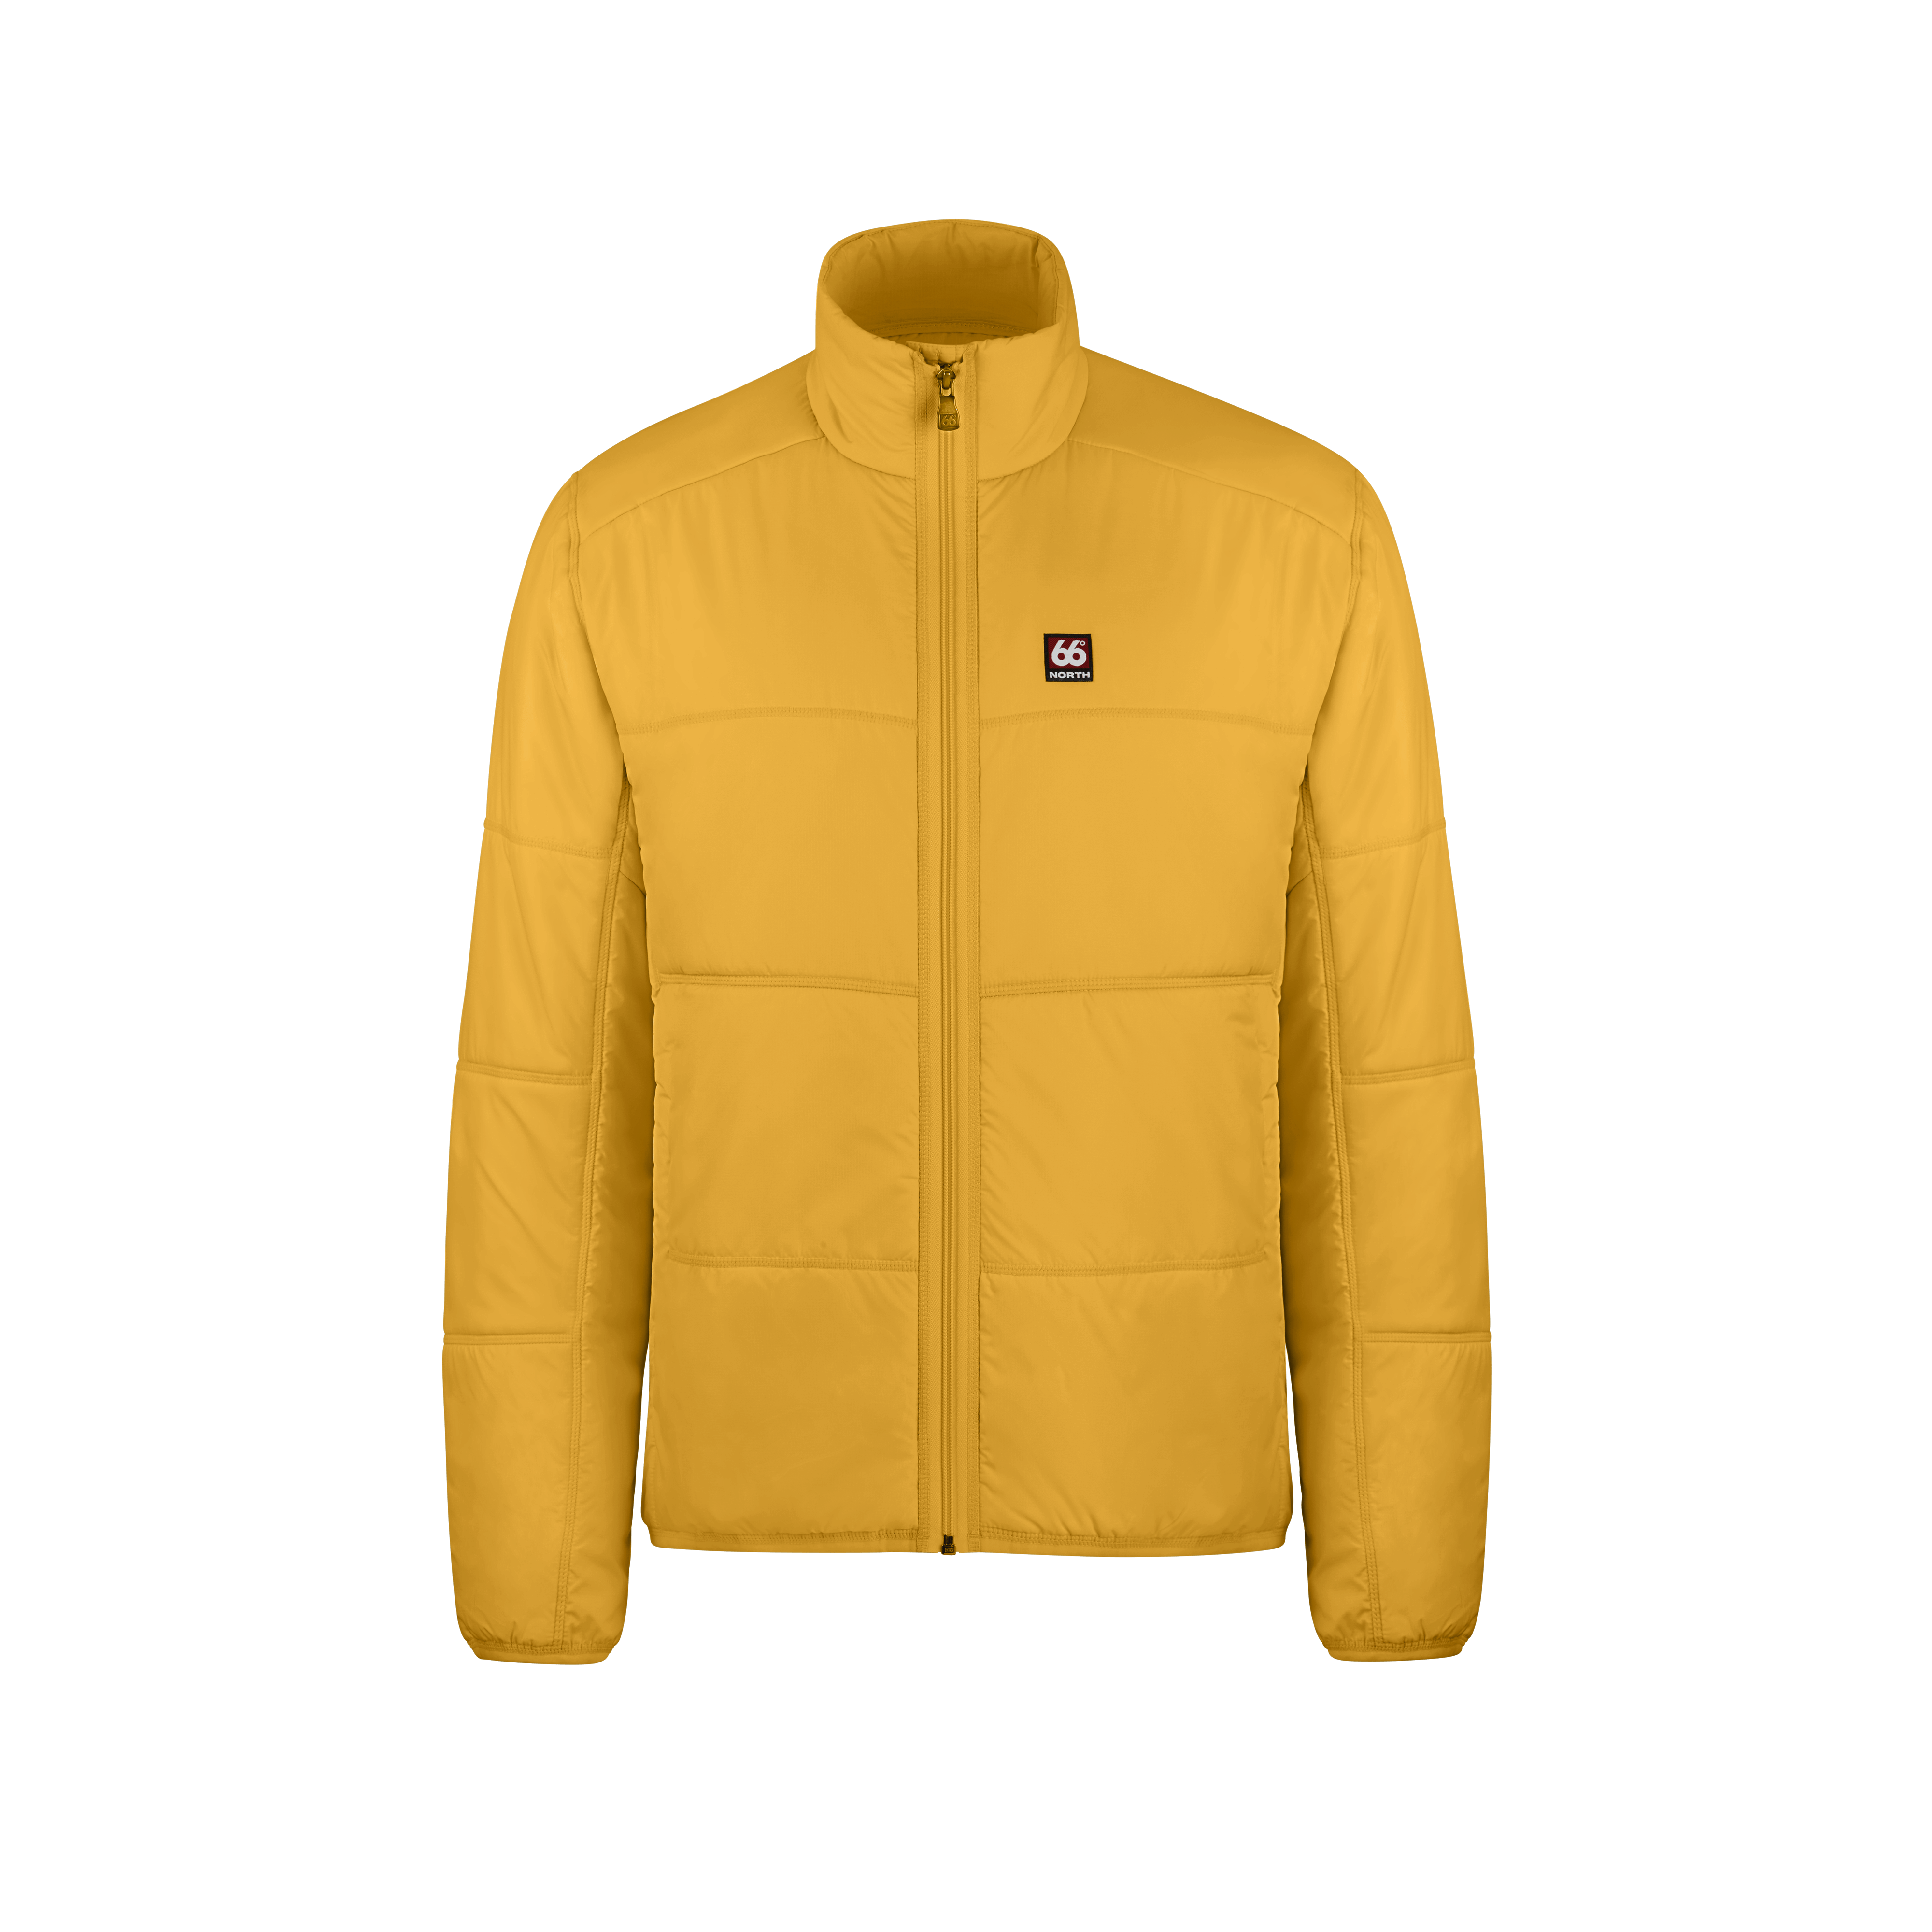 66 North Men's Vatnajökull Jackets & Coats - Retro Yellow - L